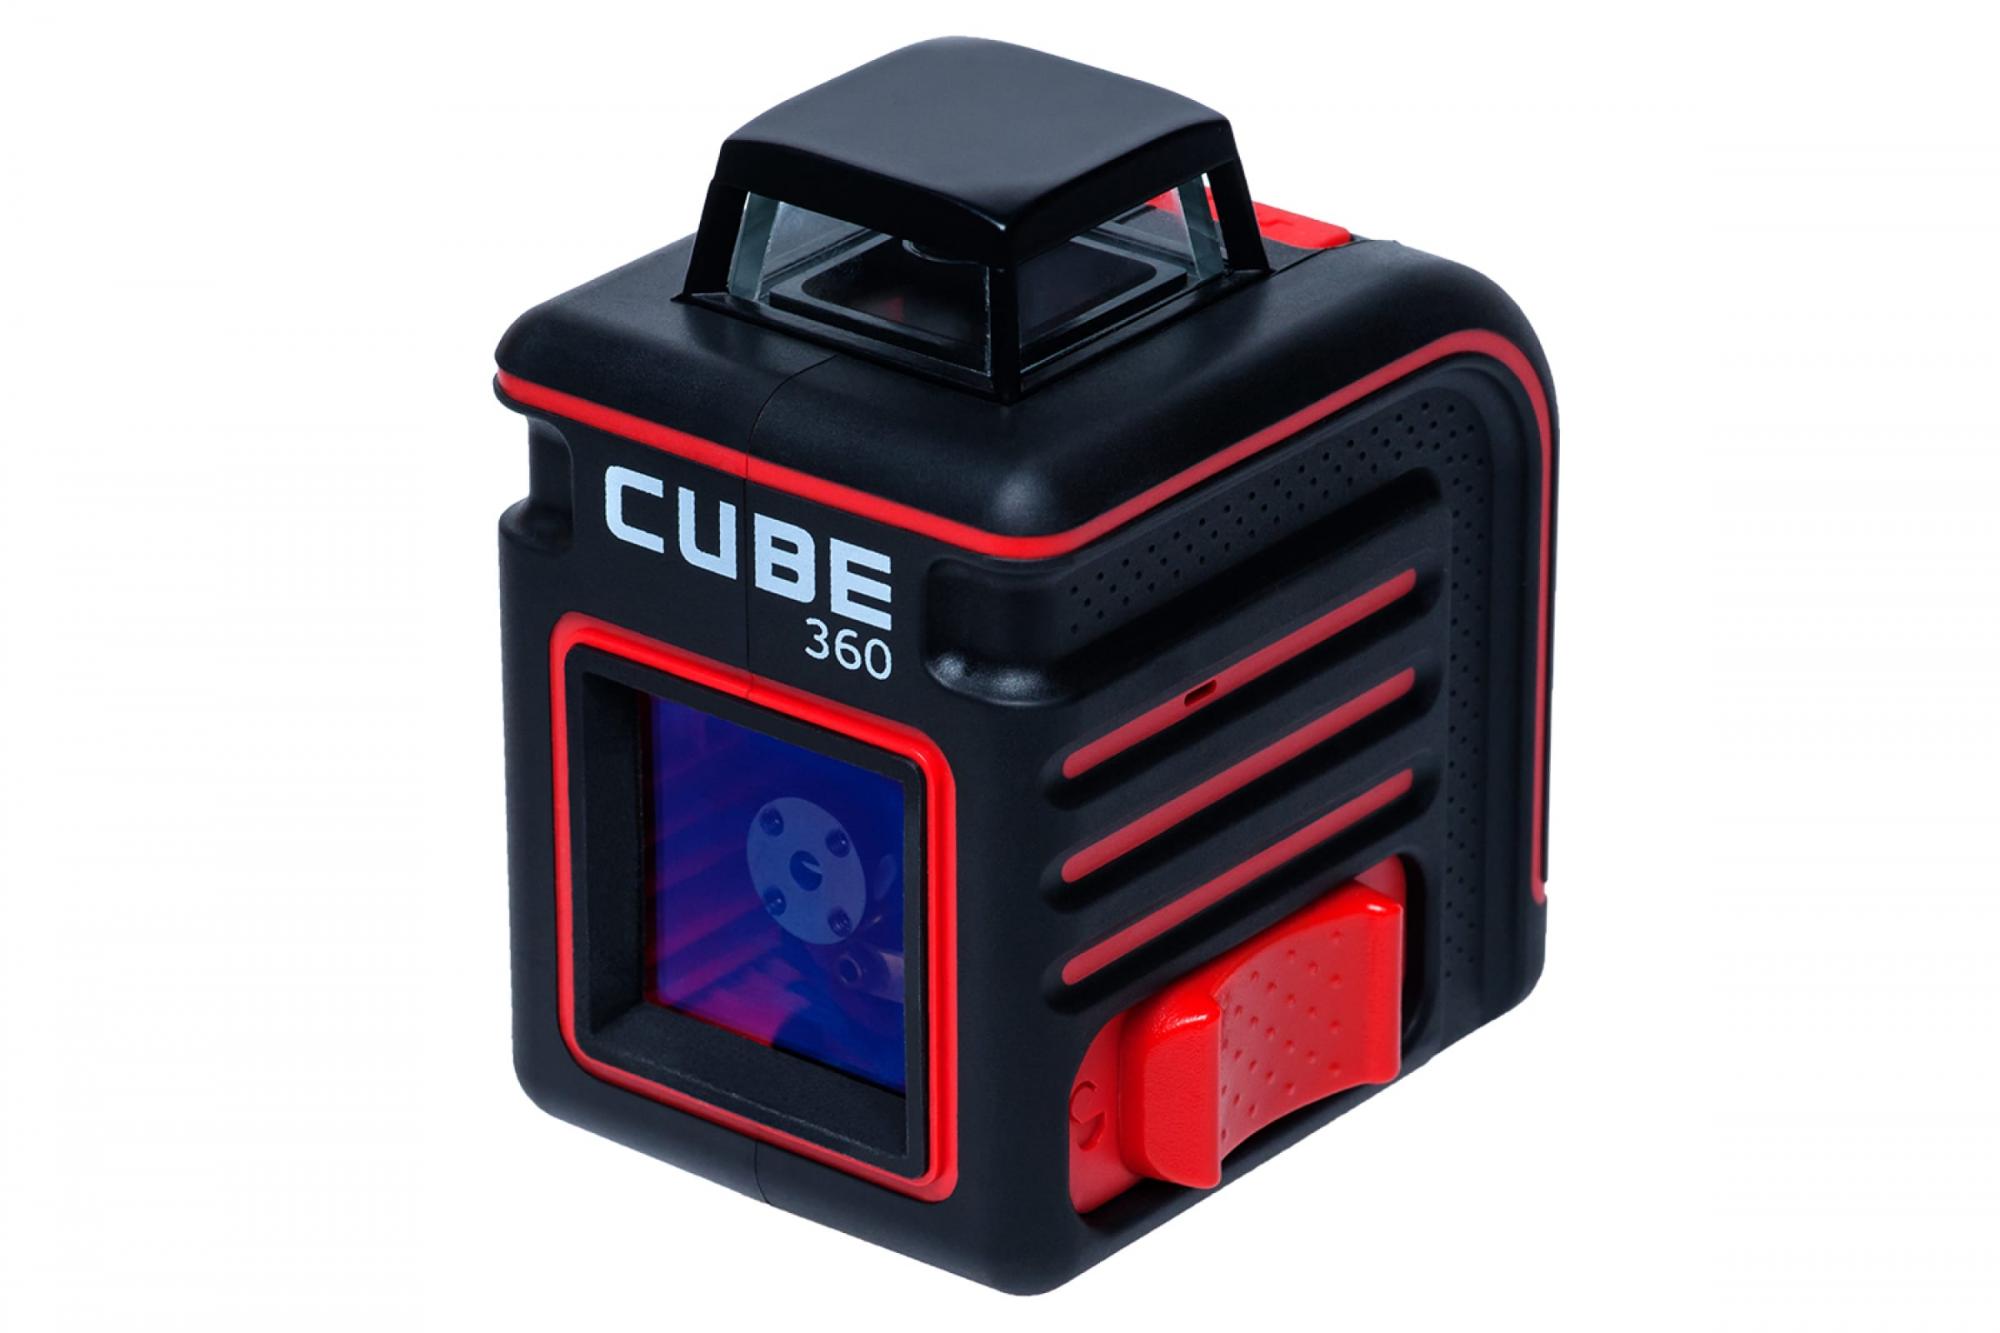 Лазерный уровень ada cube basic edition. Нивелир лазерный ada Cube 360 professional Edition. Лазерный уровень ada Cube 360 Basic Edition. Построитель лазерных плоскостей ada Cube 360 professional Edition а00445. Ada instruments Cube 360 Basic Edition (а00443).